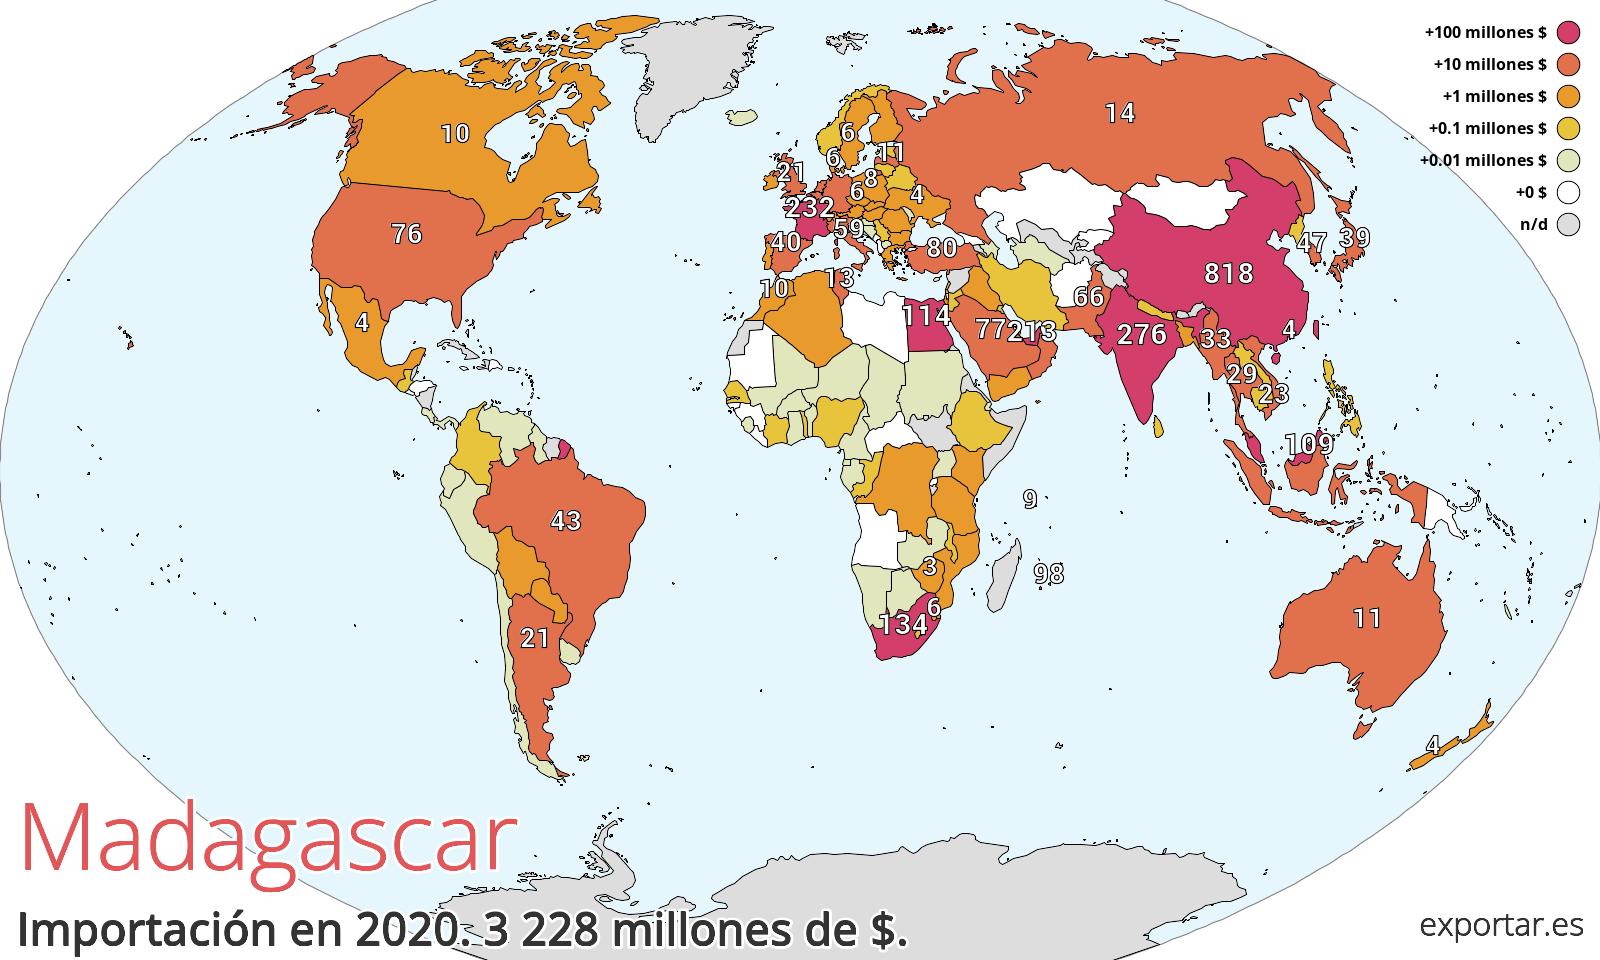 Mapa de importación de Madagascar en 2020.